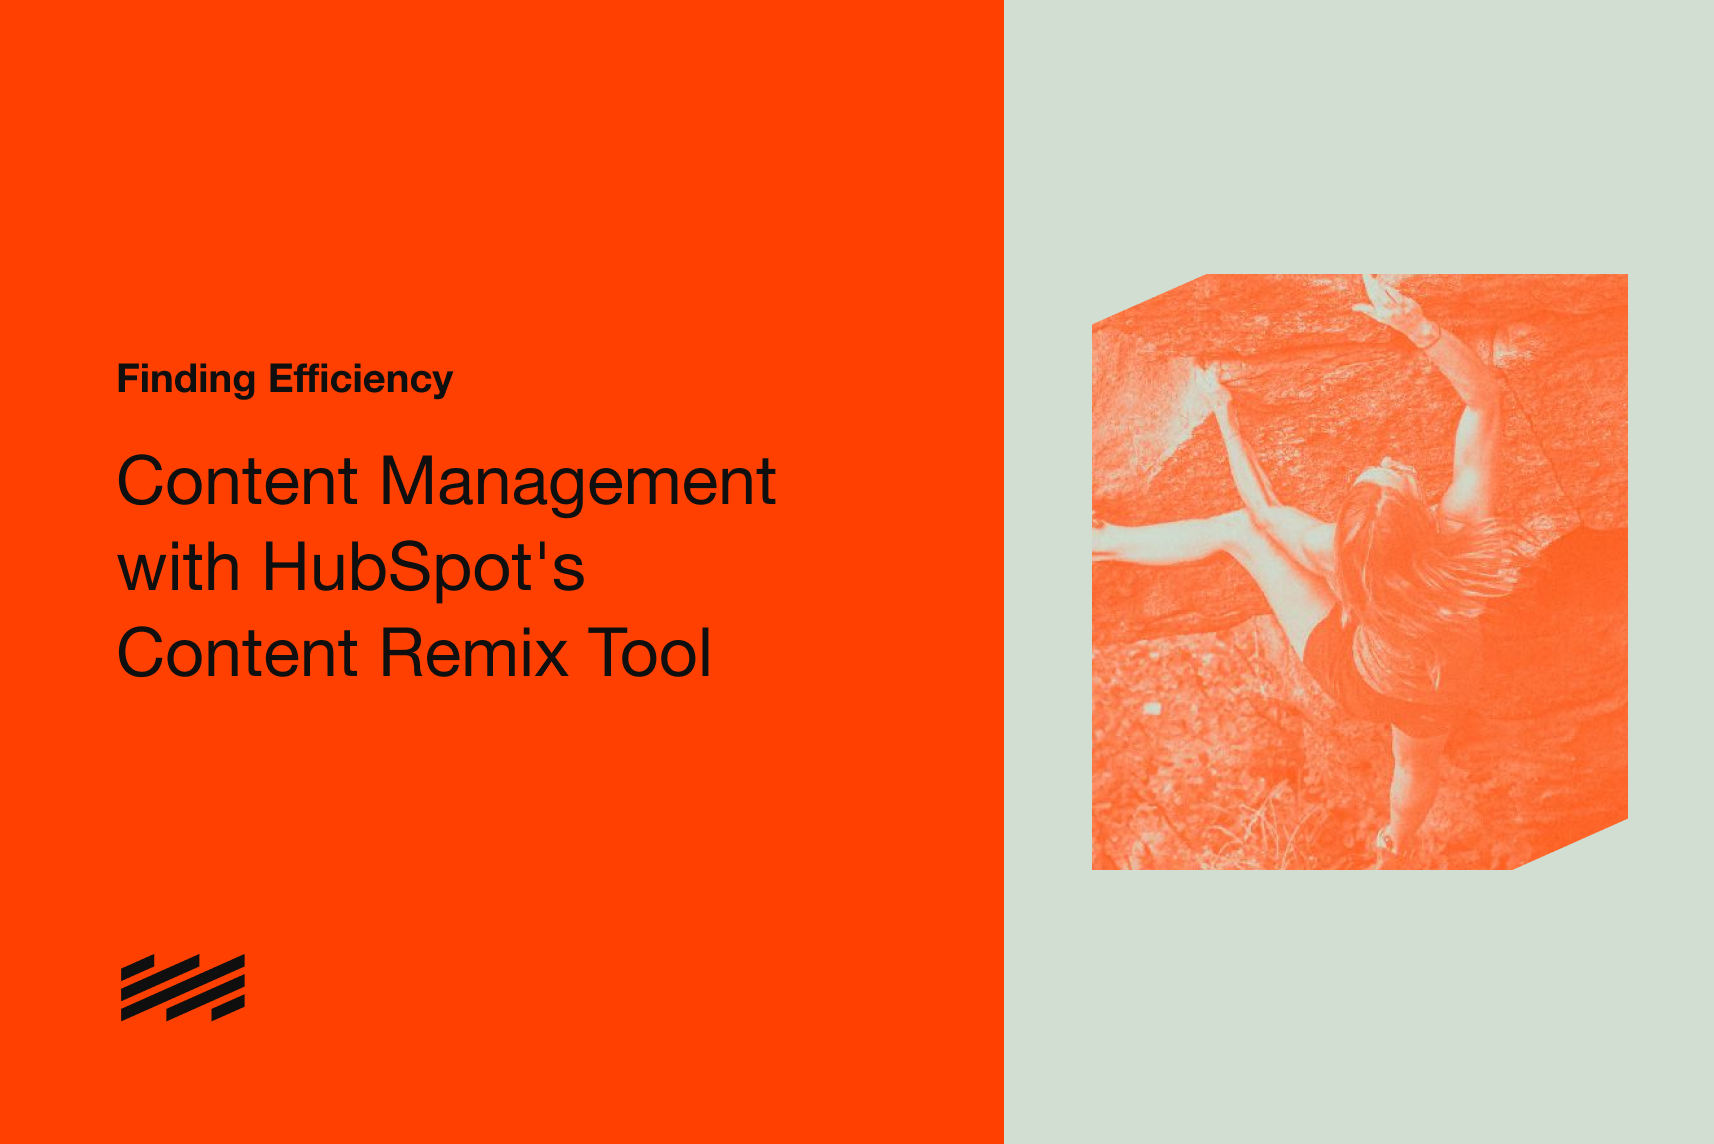 Efficient Content Management with HubSpot's Content Remix